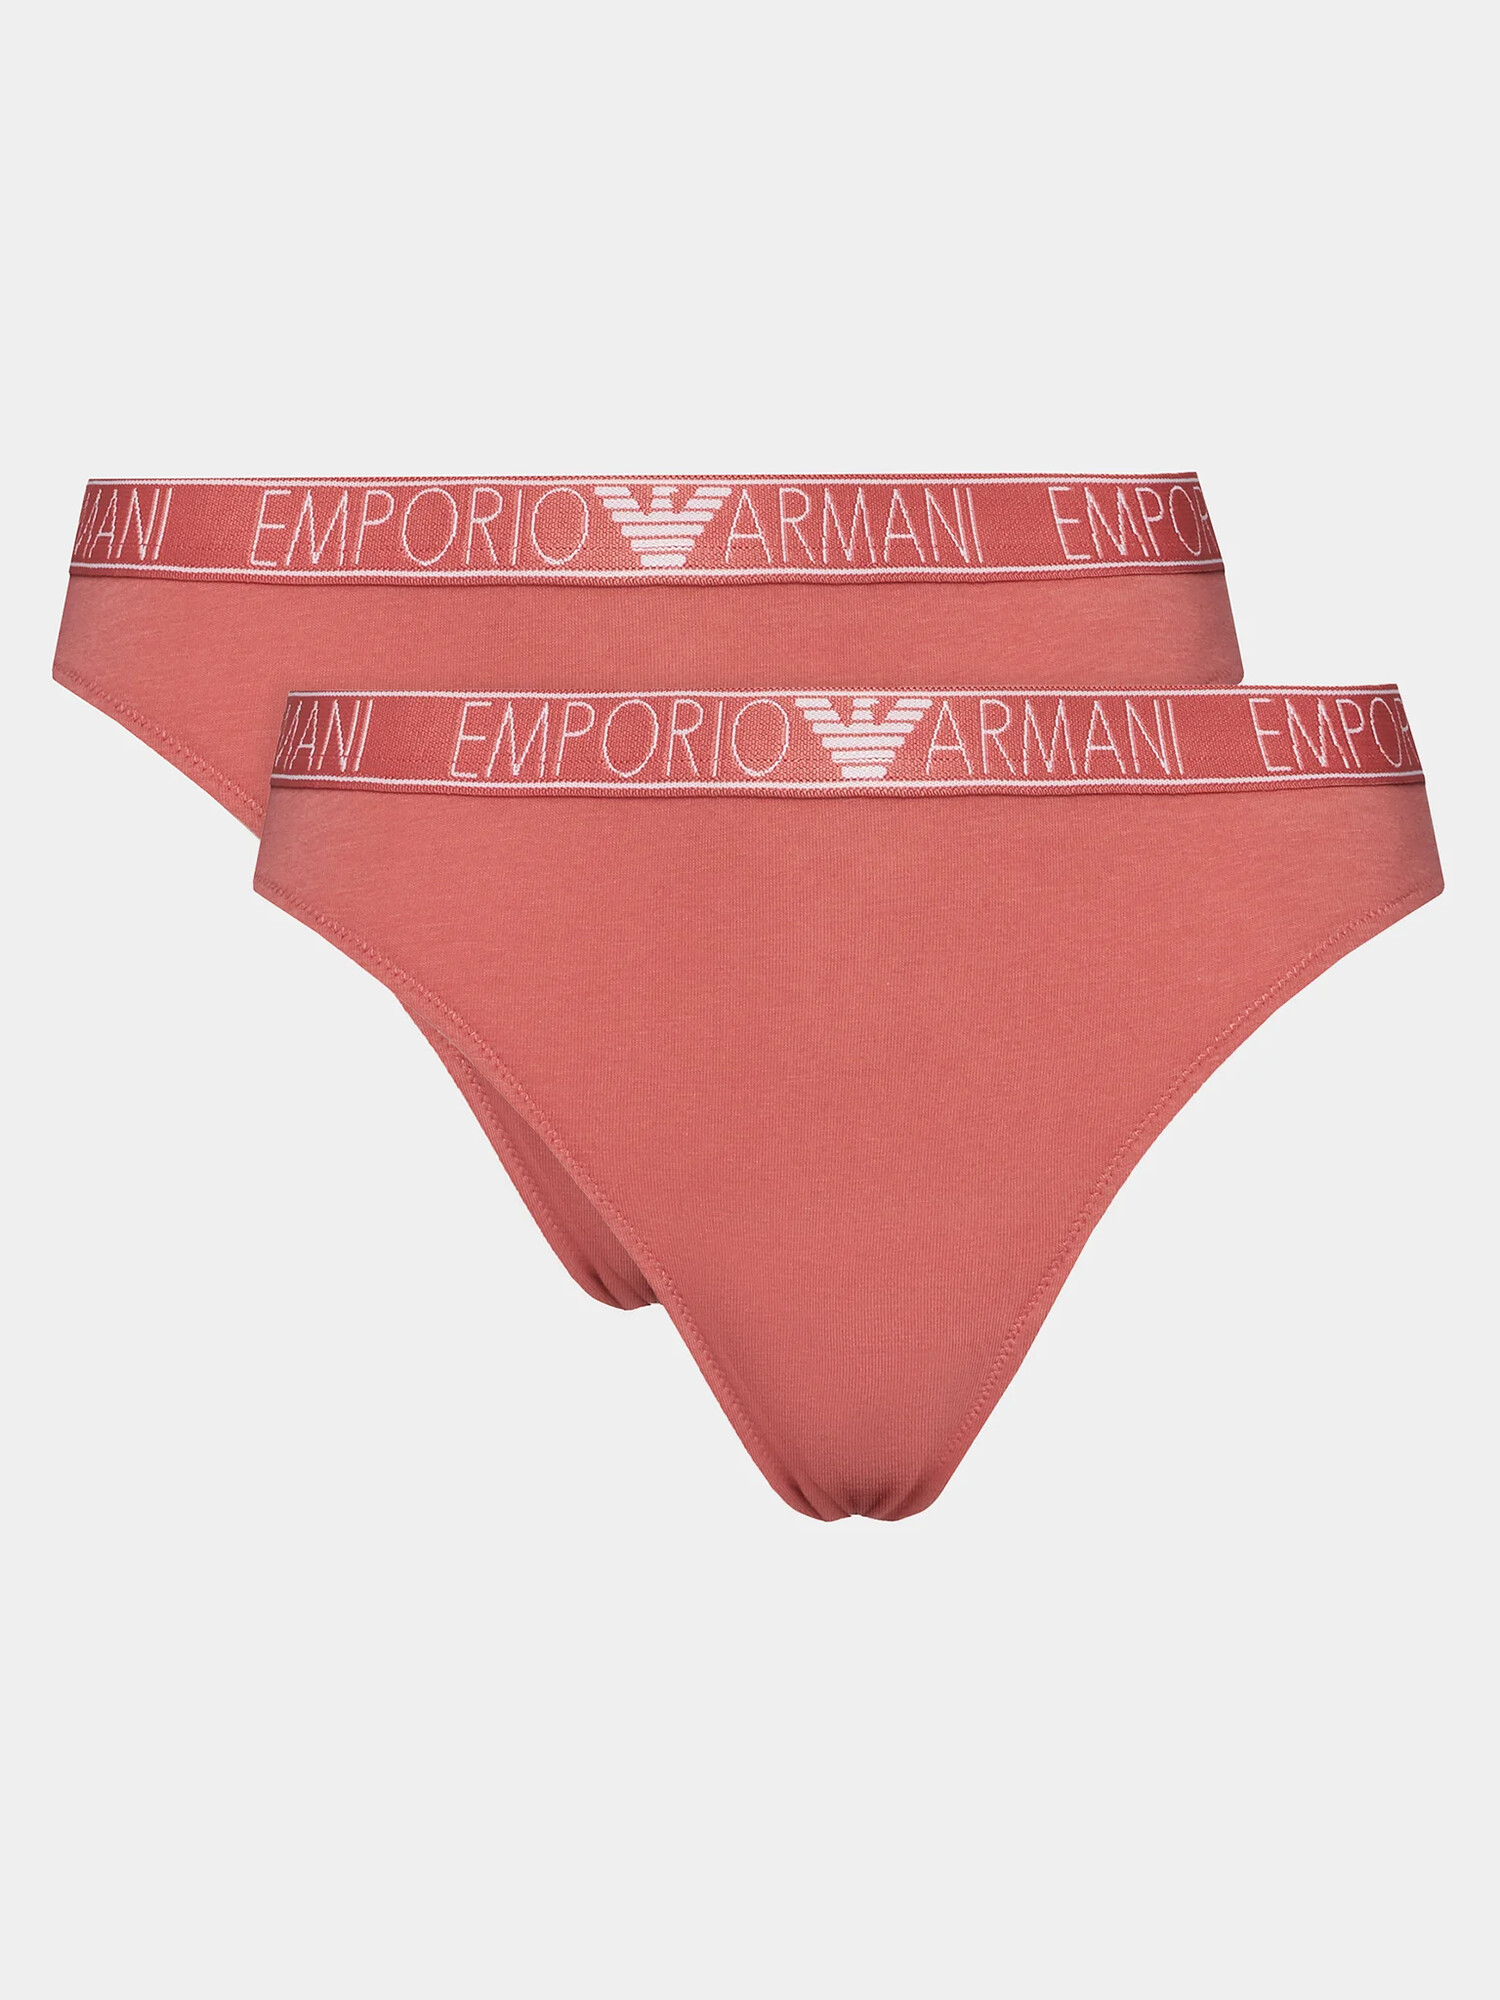 Dámské kalhotky 2Pack 164752 4R223 05373 korálové - Emporio Armani S